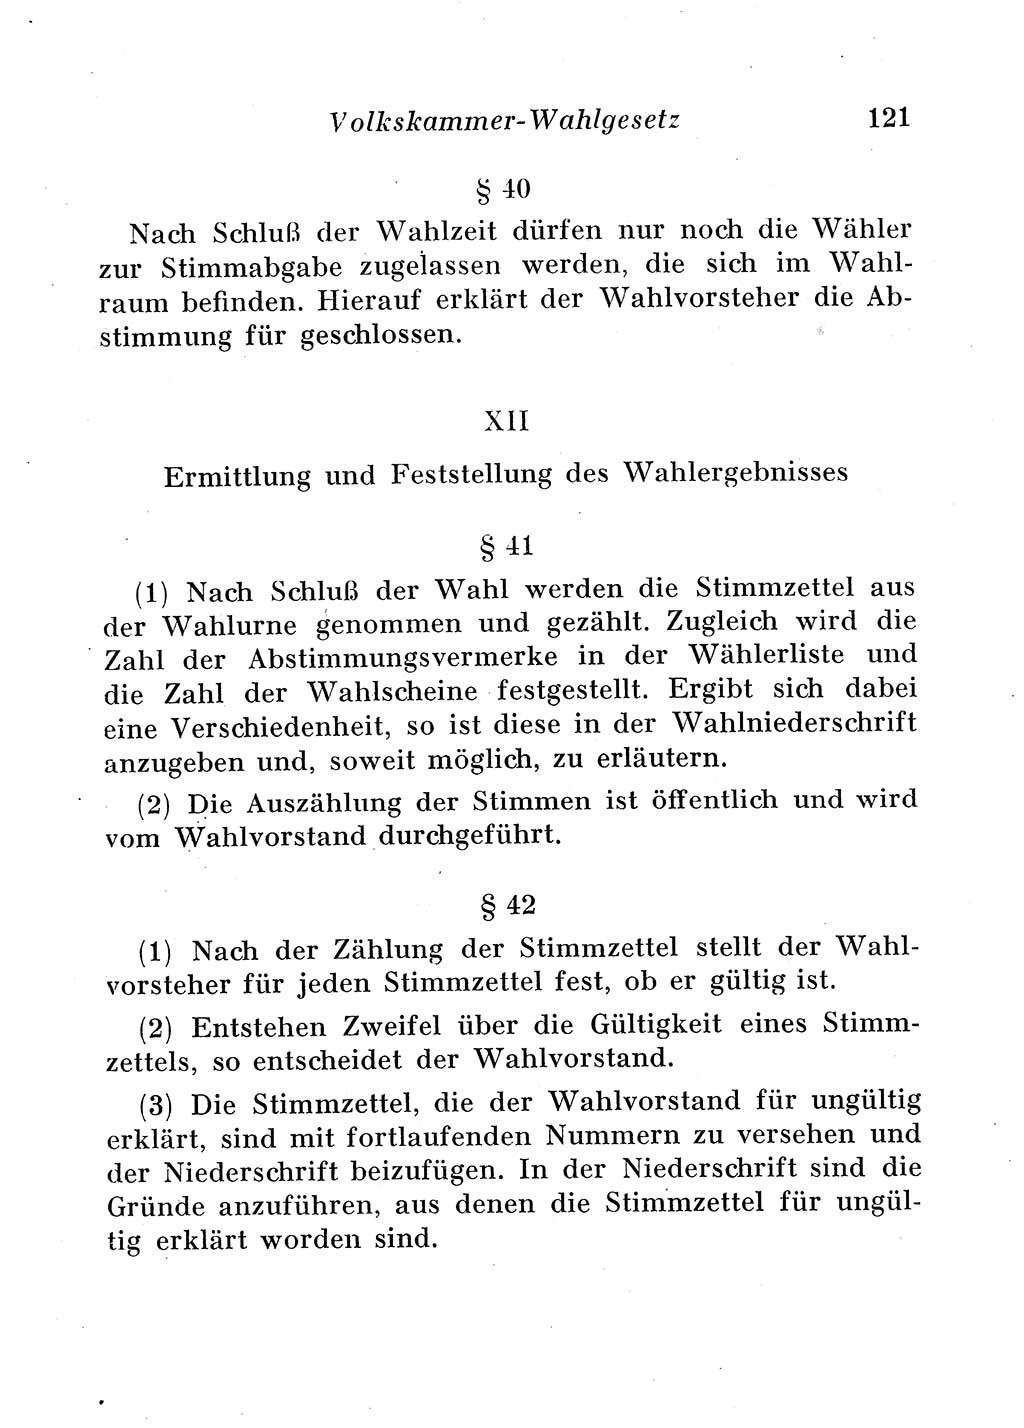 Staats- und verwaltungsrechtliche Gesetze der Deutschen Demokratischen Republik (DDR) 1958, Seite 121 (StVerwR Ges. DDR 1958, S. 121)